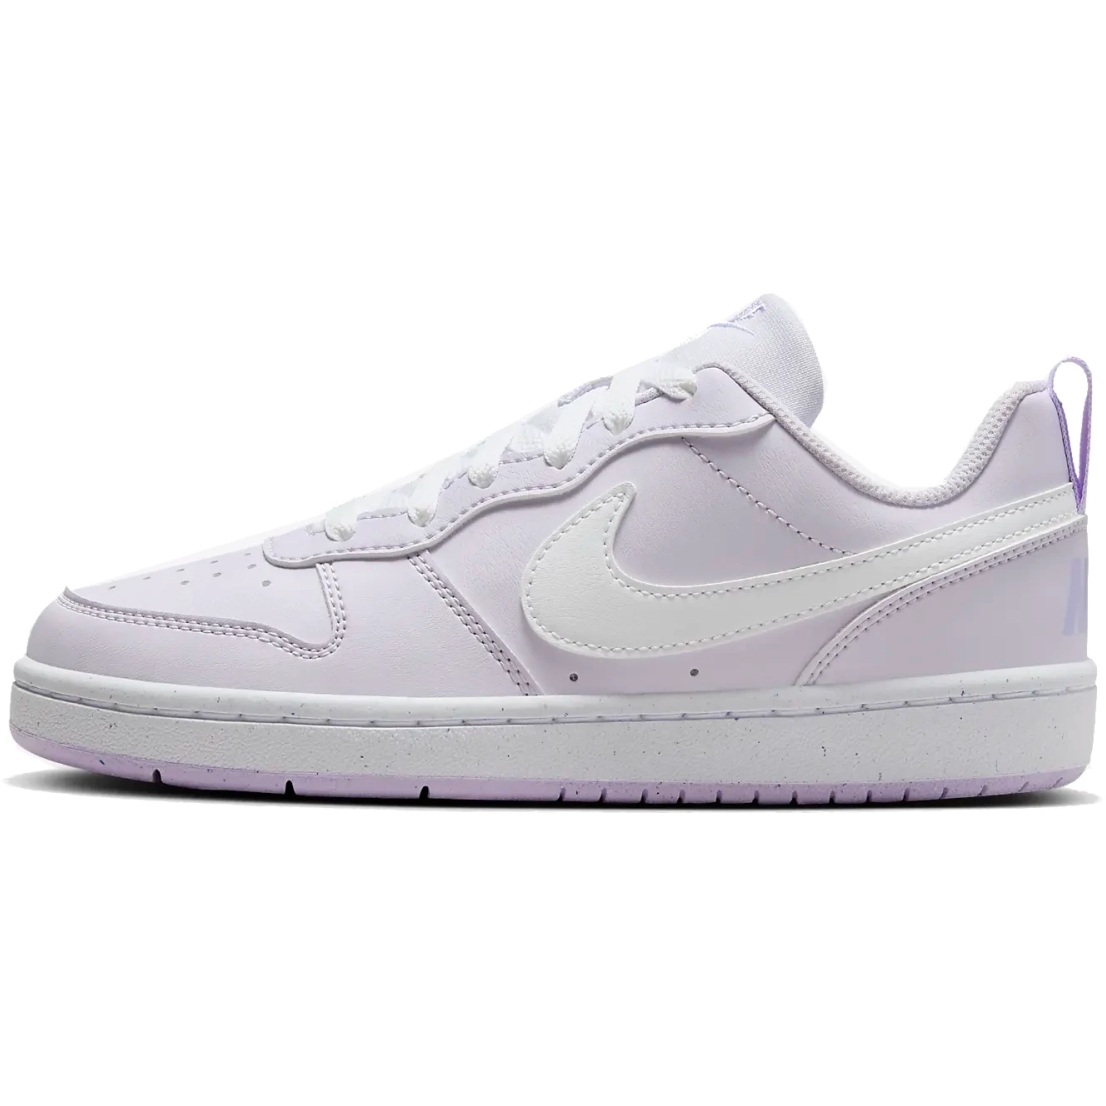 Produktbild von Nike Court Borough Low Recraft Schuh für ältere Kinder - barely grape/white DV5456-500